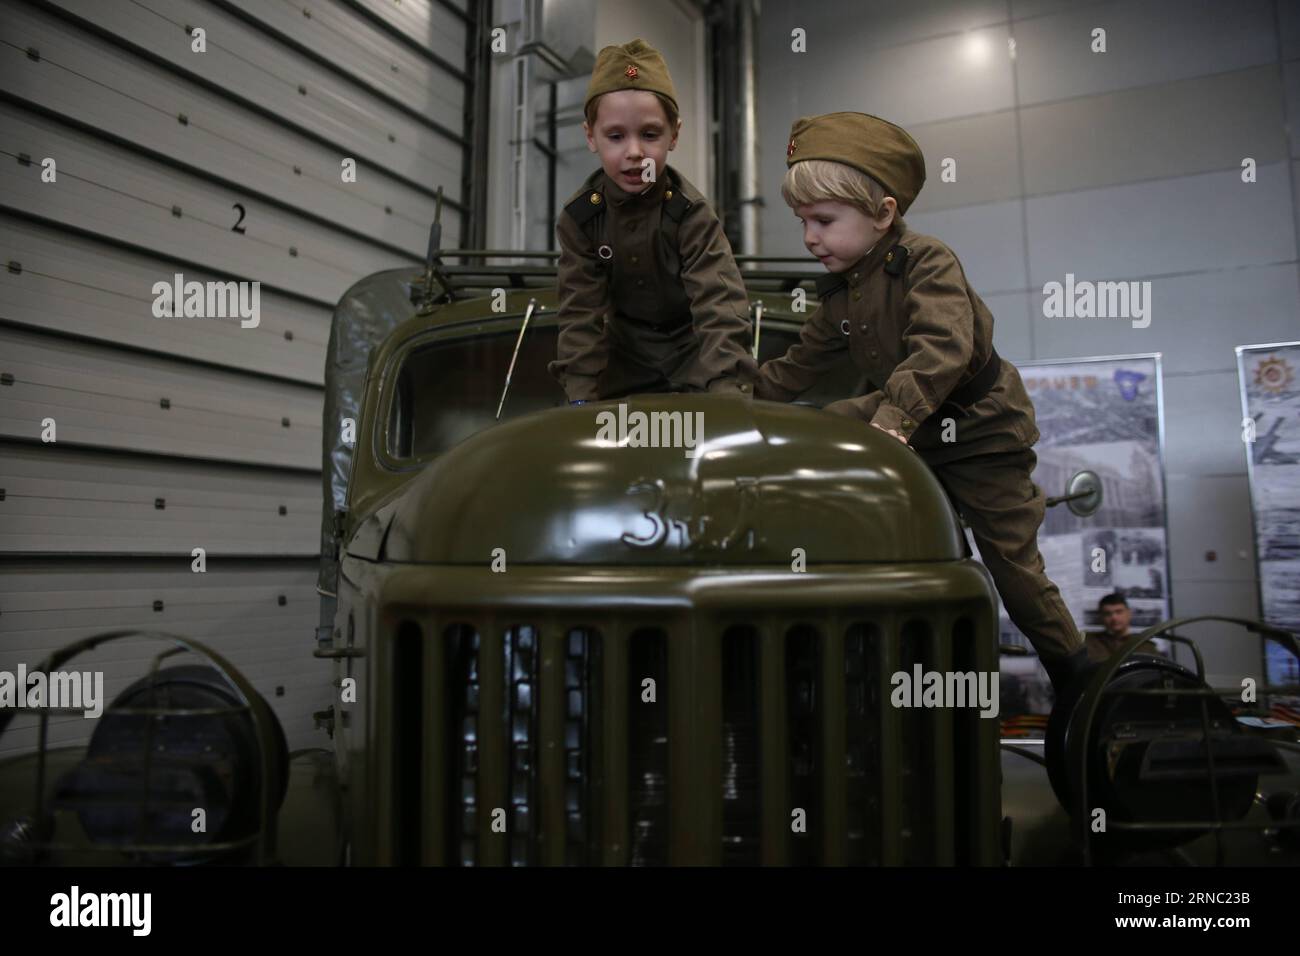 (160318) -- MOSKAU, 18. März 2016 -- Kinder spielen am 18. März 2016 in Moskau, Russland, auf Ausstellungsmodellen mit Kostümkleidung in sowjetischer Uniform im Stil des Zweiten Weltkriegs. Die internationale Ausstellung „Motors of war“ in Moskau zeigt Fahrzeuge, die am Zweiten Weltkrieg teilgenommen haben und vom 18. Bis 20. März stattfinden werden. RUSSLAND-MOSKAU-WWII-AUSSTELLUNG EvgenyxSinitsyn PUBLICATIONxNOTxINxCHN Moskau 18. März 2016 Kinder spielen AUF Belichtungsmodellen in Kostümen stilisierte sowjetische Uniform aus dem Zweiten Weltkrieg in Moskau Russland AM 18. März 2016 Internationale Ausstellung Engine of was in Moskau zeigt FAHRZEUGE nahmen AM Zweiten Weltkrieg Teil und will Hero vom 18. Bis 20. März Stockfoto